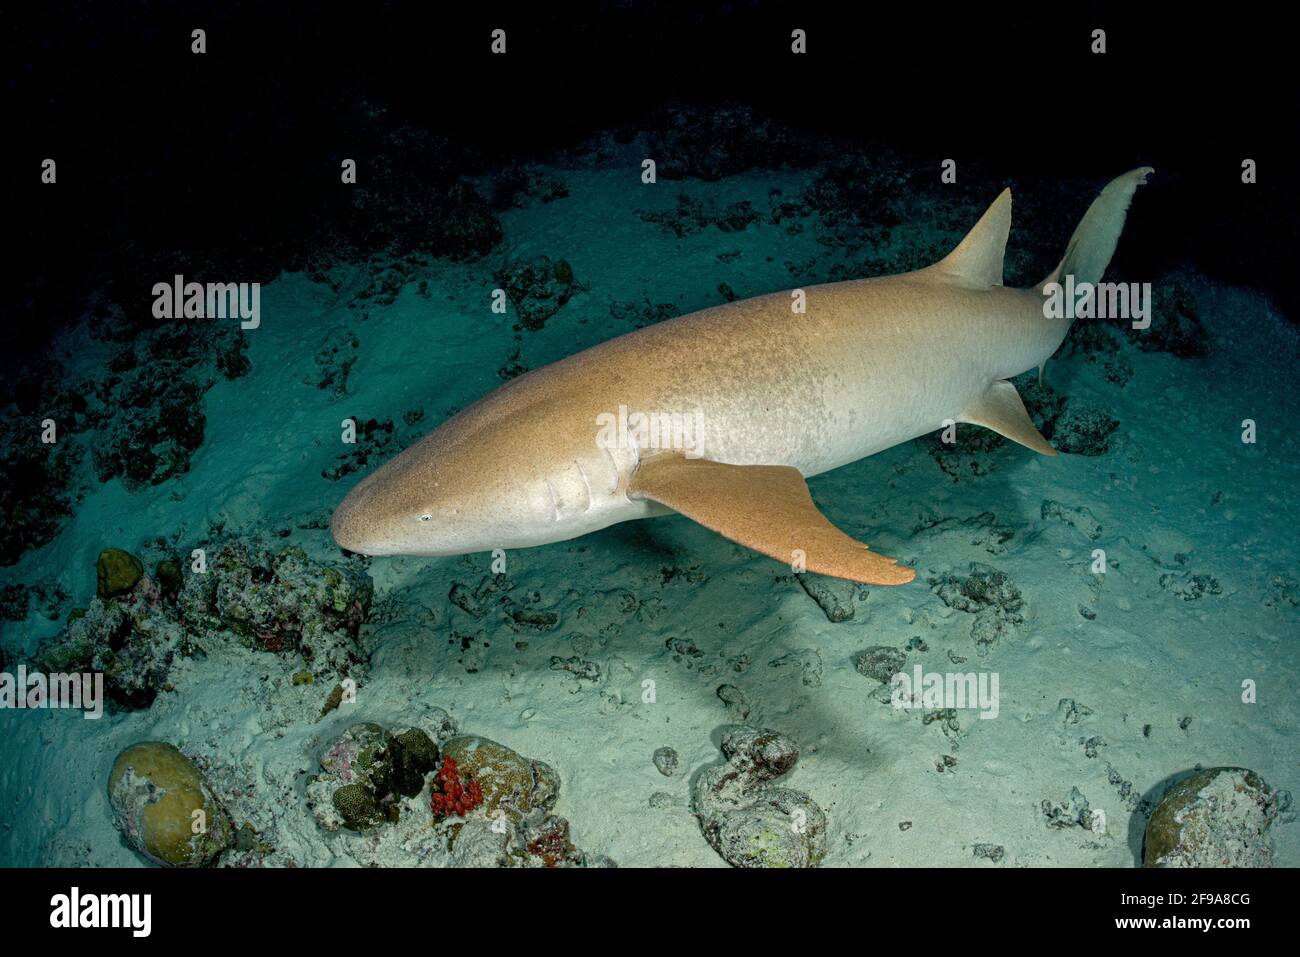 El tiburón nodriza Indo-Pacífico (Nebrio ferrugineus) (en inglés: Tiburón nodriza) es un tiburón que se puede encontrar en la zona del Mar Rojo a Sudáfrica, Australia y las Islas de la Sociedad a profundidades entre 1 m y 40 m. Foto de stock